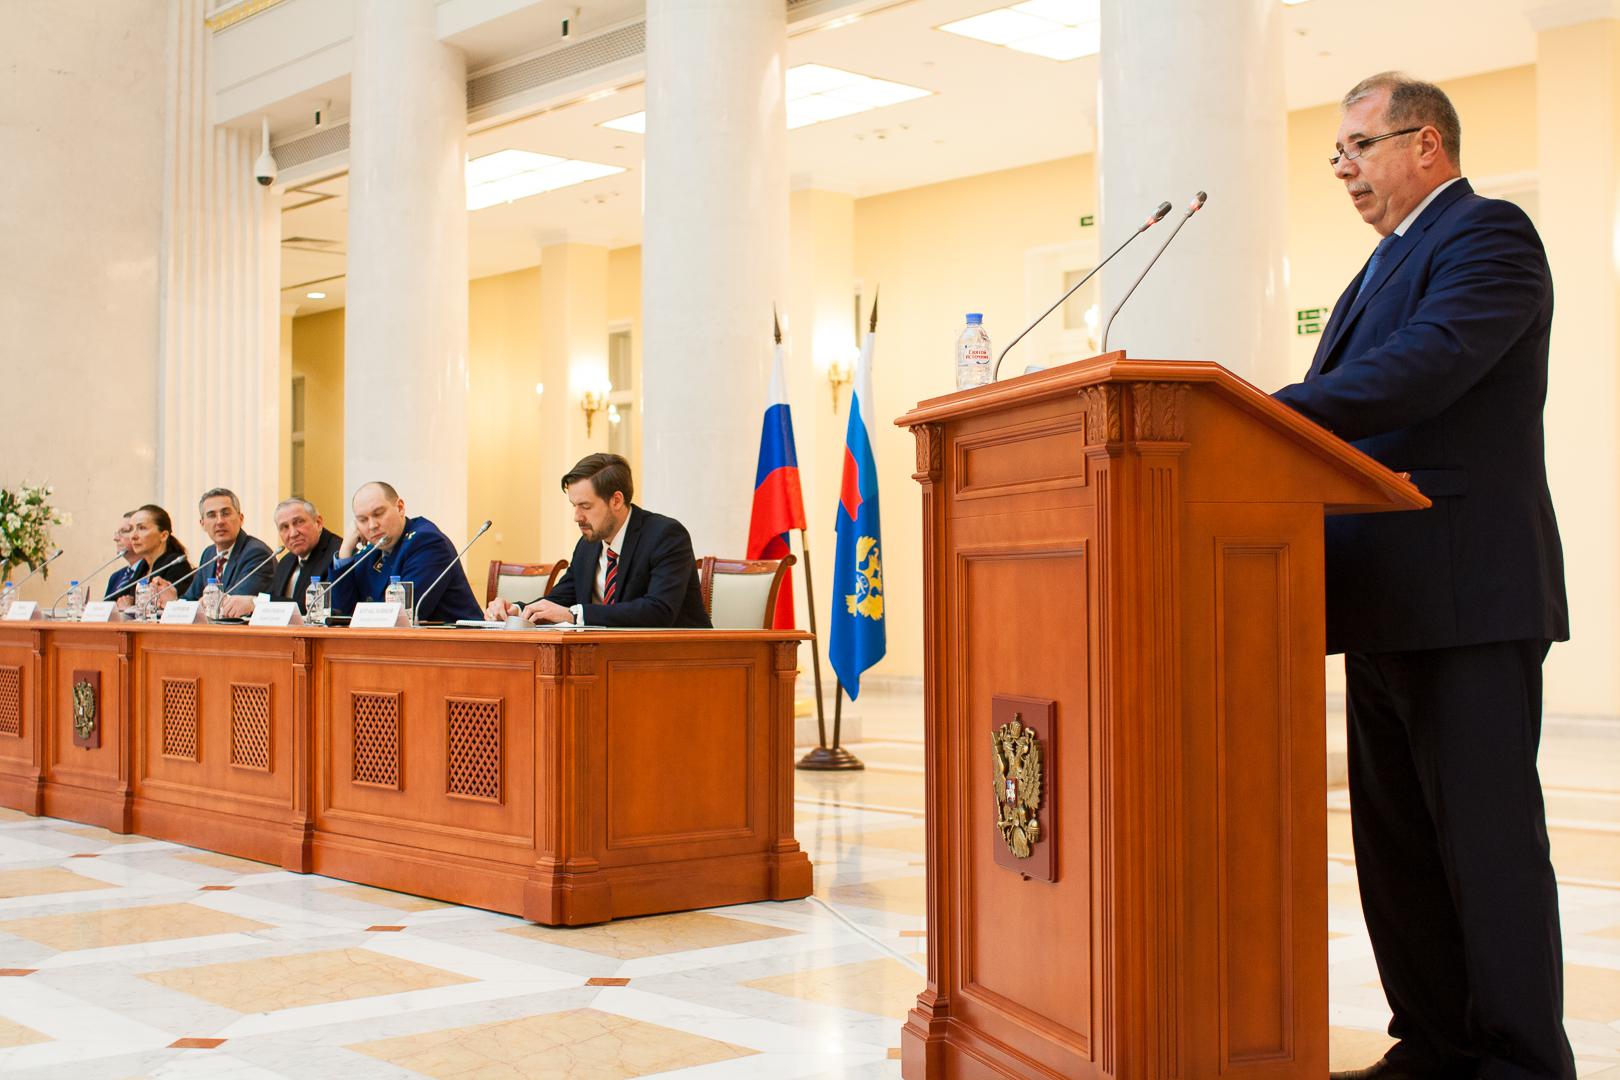 Руководители Контрольно-счетной палаты Санкт-Петербурга приняли участие в заседании Коллегии Управления Федерального казначейства по Санкт-Петербургу